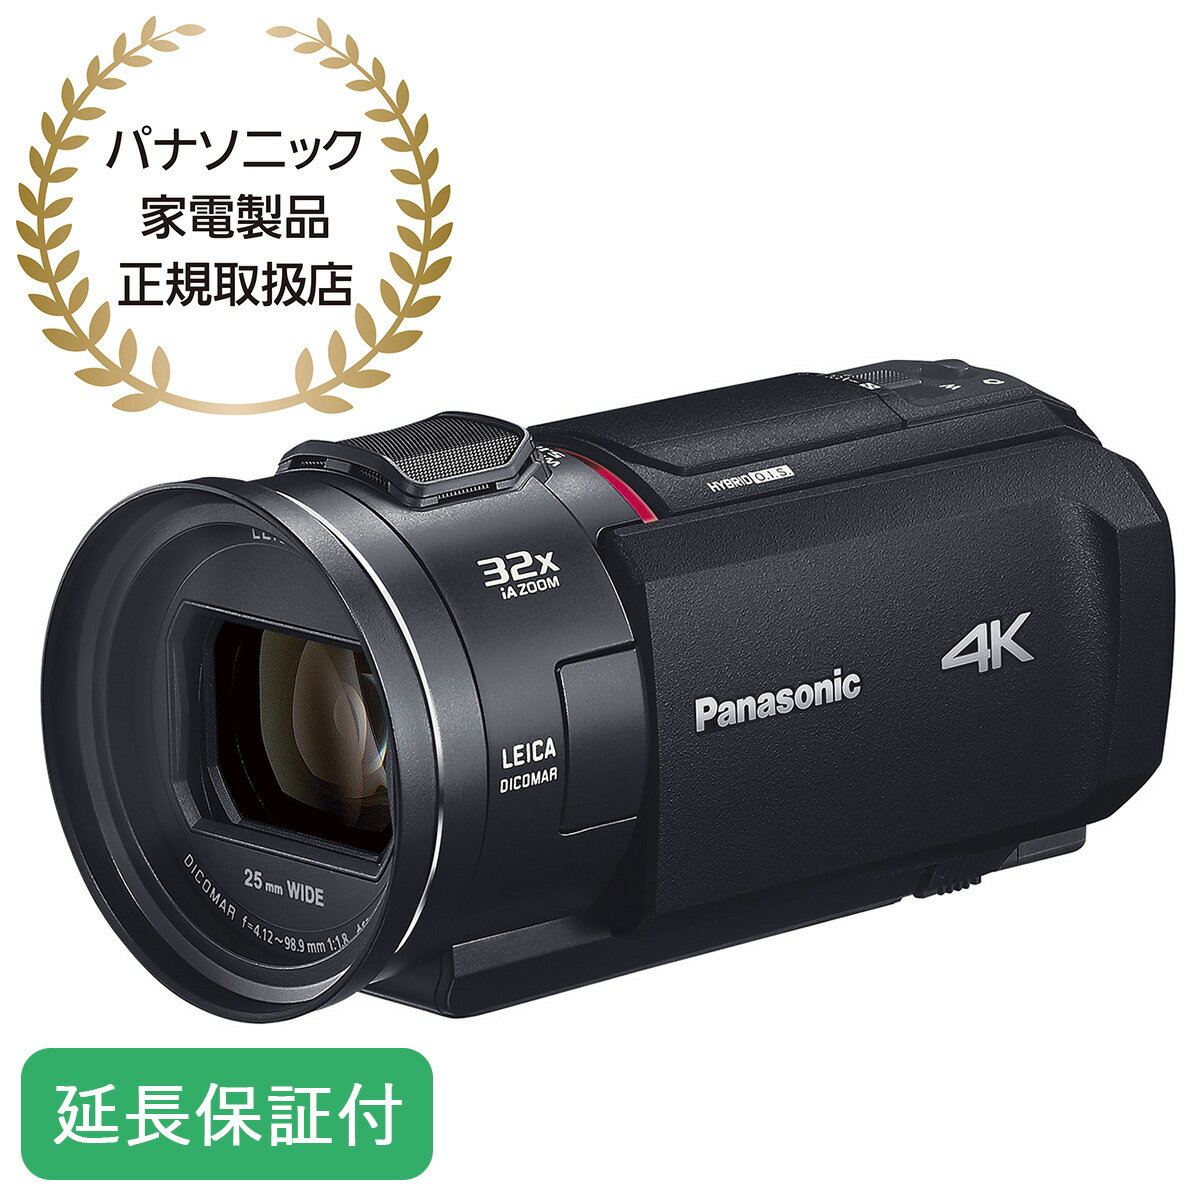 Panasonic パナソニック 【5年保証付】デジタル4Kビデオカメラ ブラック 内蔵メモリー64GB HC-VX2MS-K